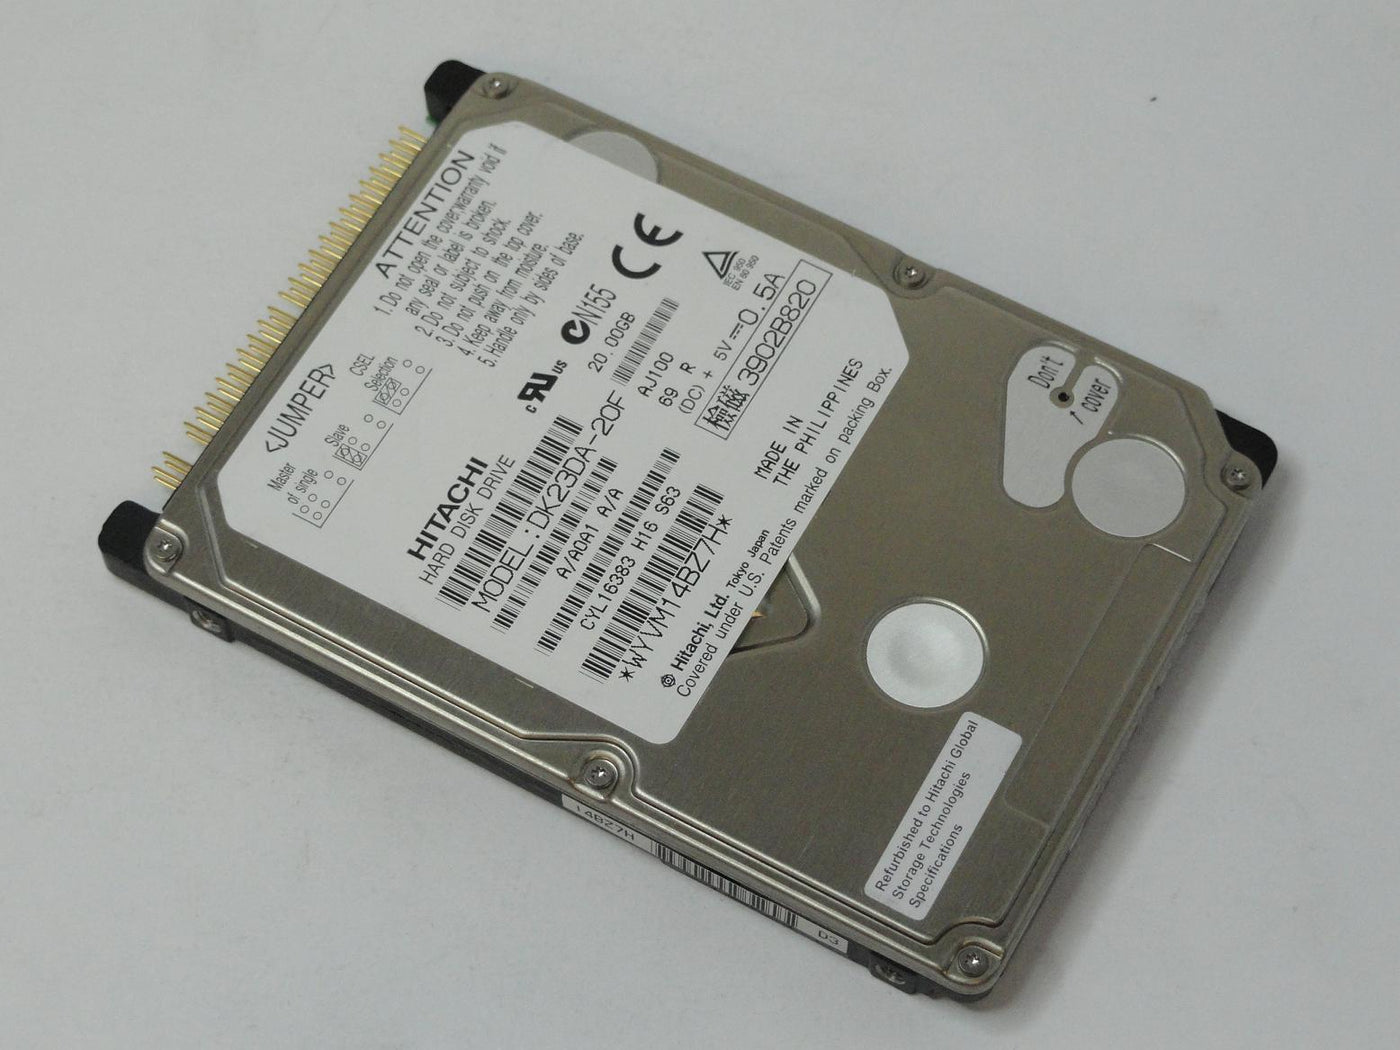 DK23DA-20F - 20GB 4200RPM 9.5MM 2.5'' - Refurbished